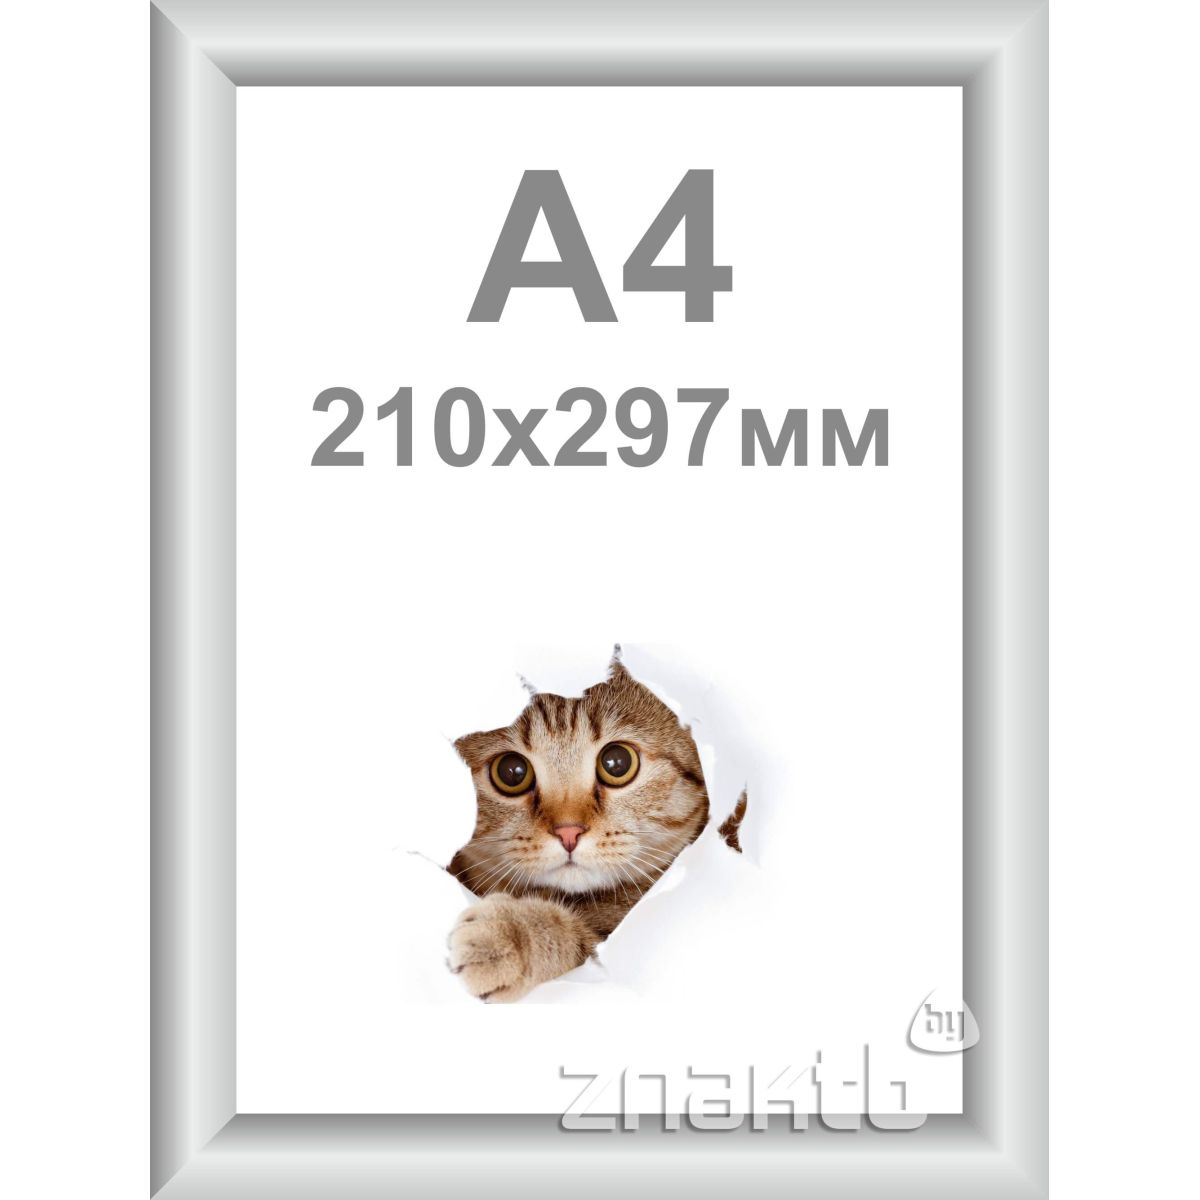 Клик рамка А4 алюминиевая 25 мм серебристая матовая